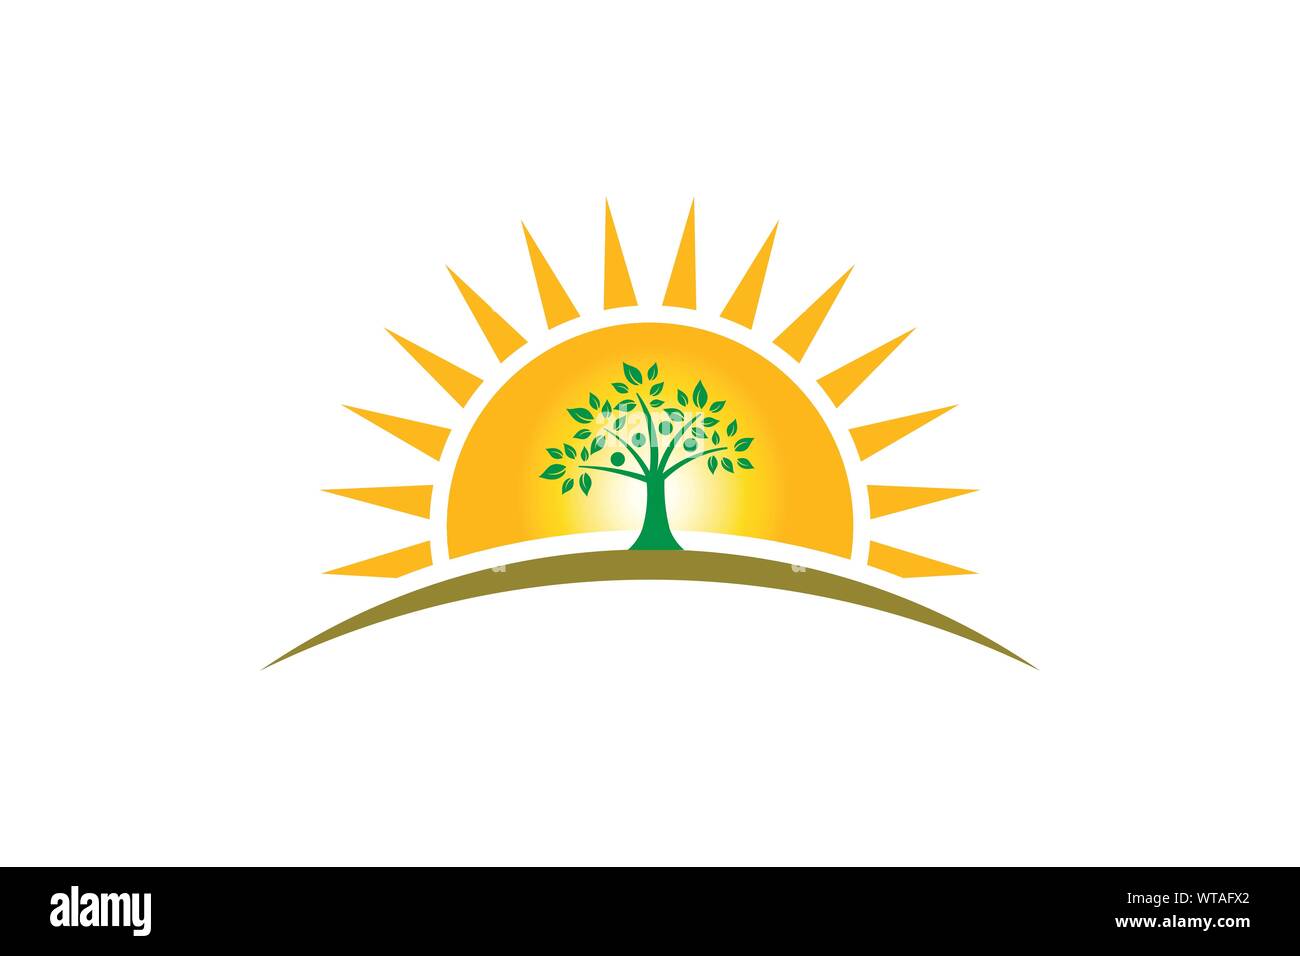 People Tree Familie im Sonnenschein Logo. Familie von vier Personen Baum starke Stock Vektor